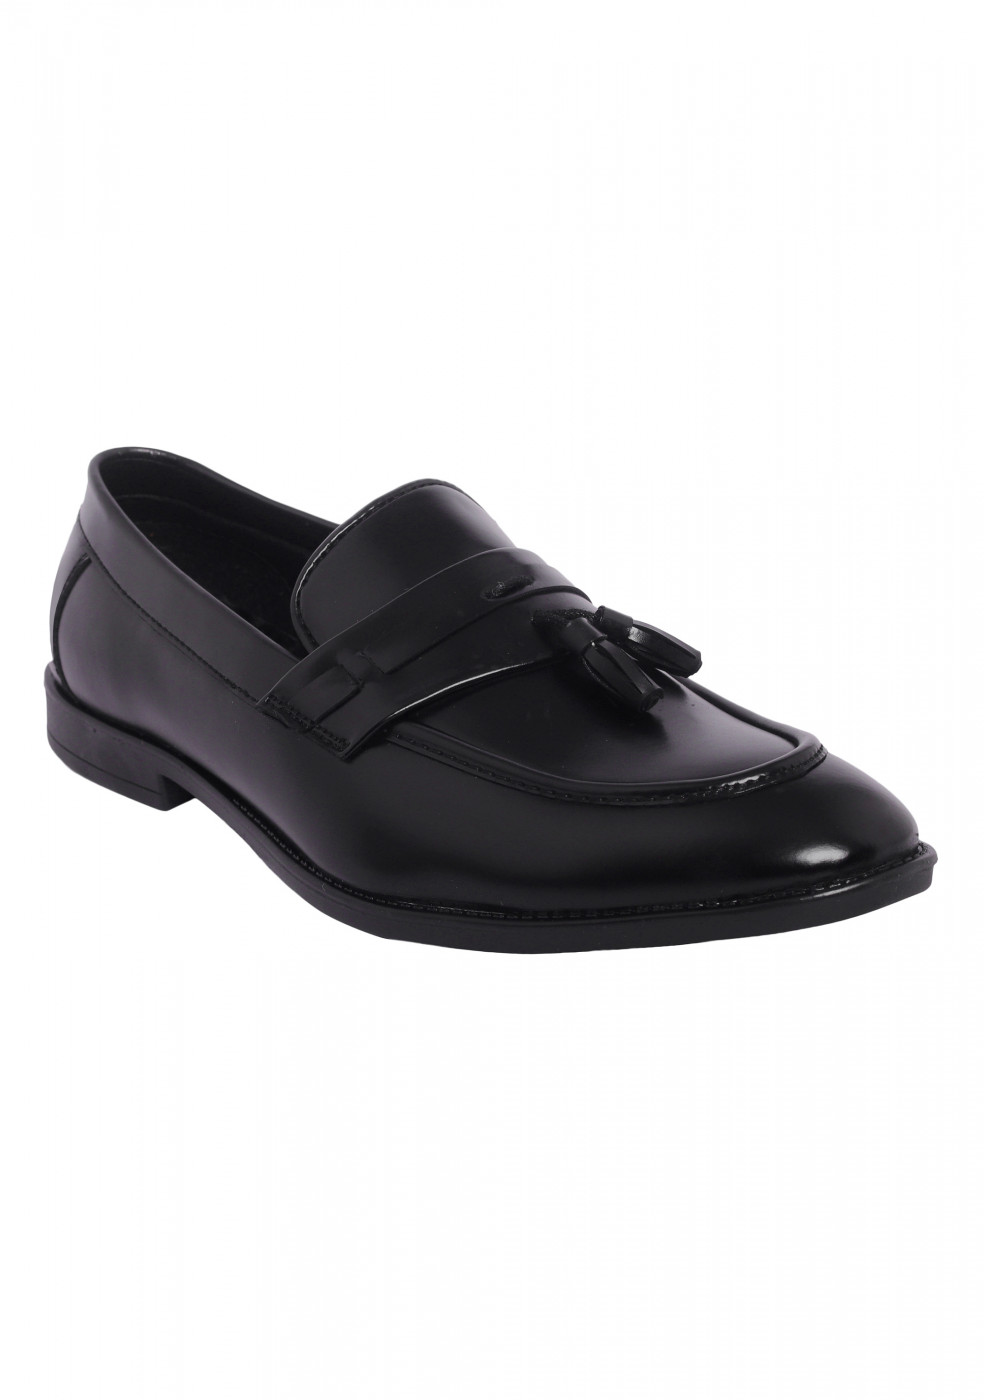 XSTOM Black Shoes For Men